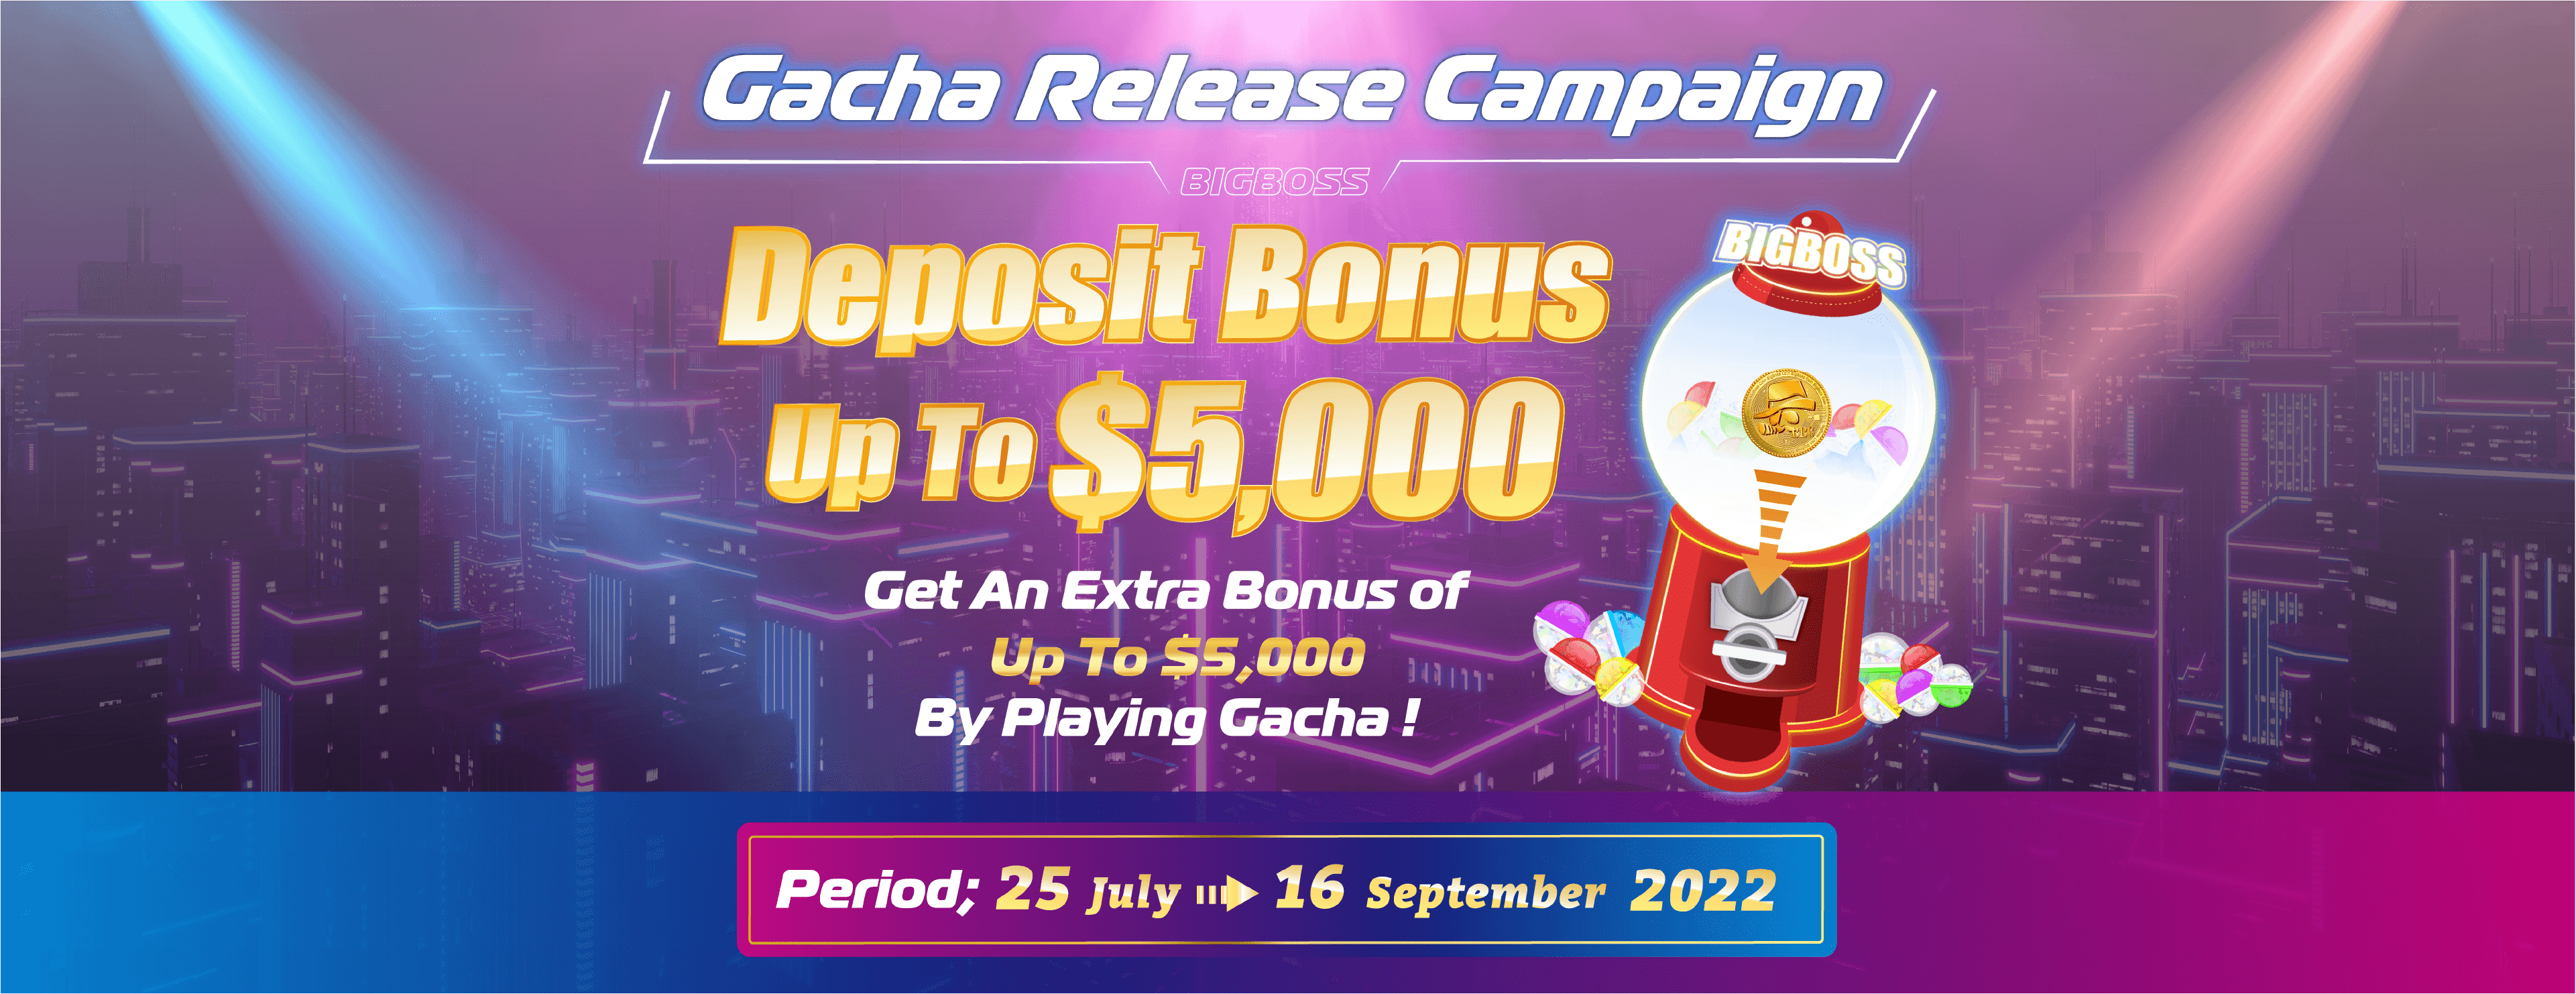 Deposit Bonus up to $5,000